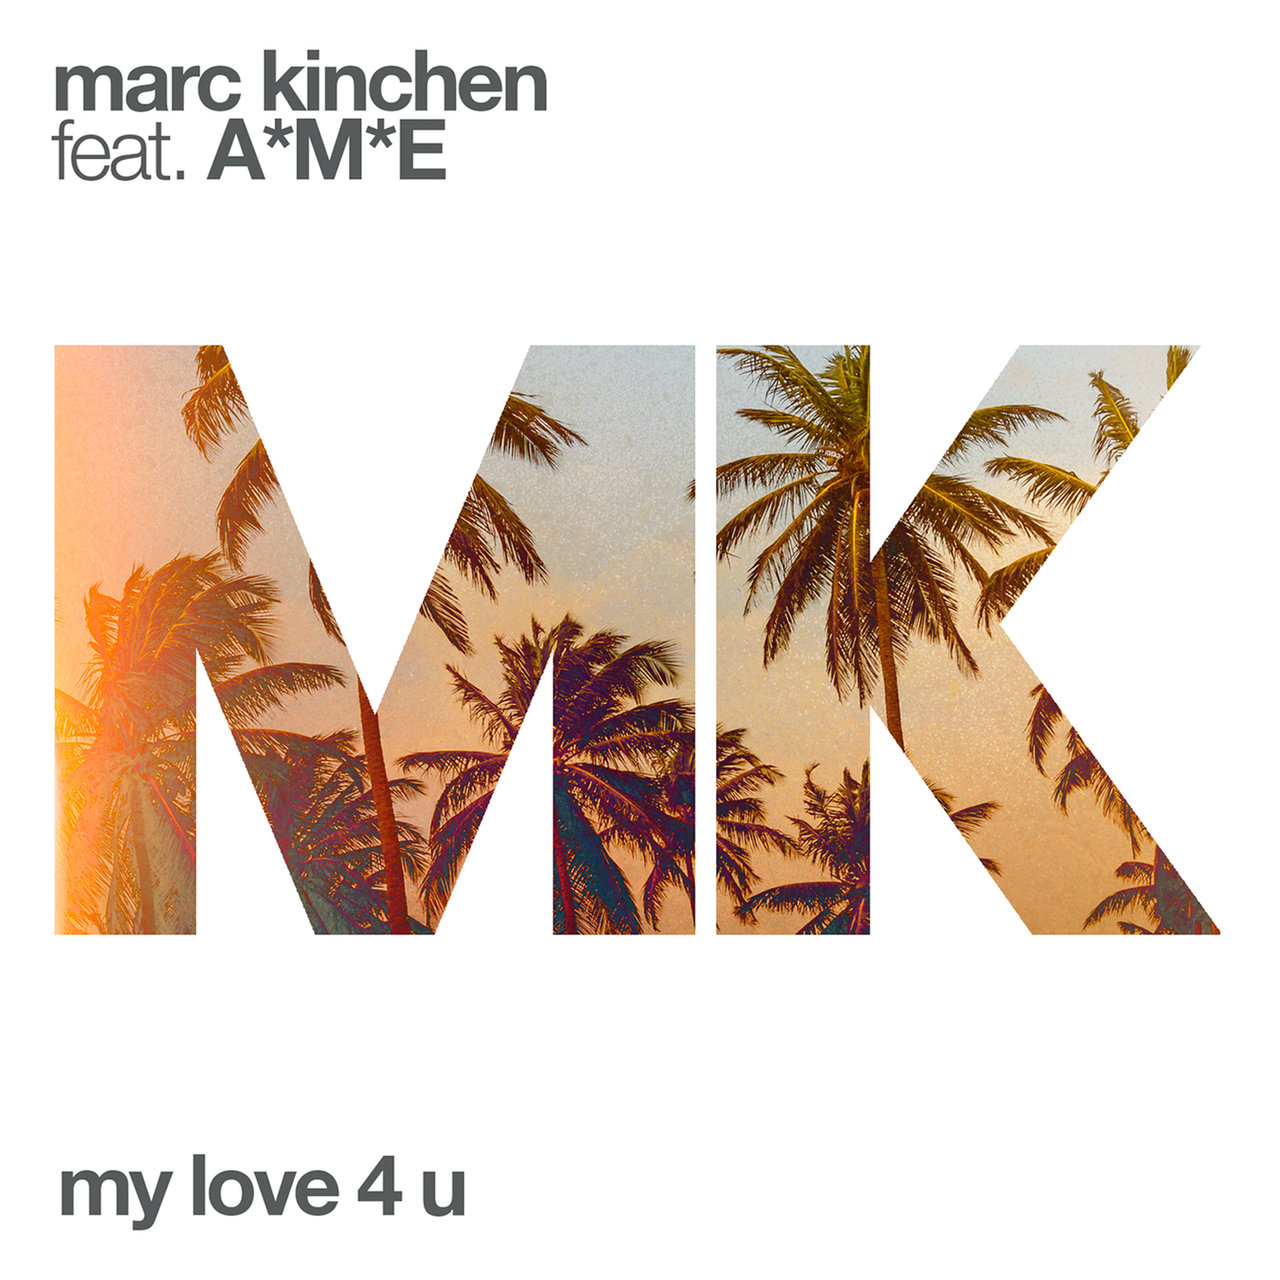 MK ft. featuring A*M*E My Love 4 U cover artwork